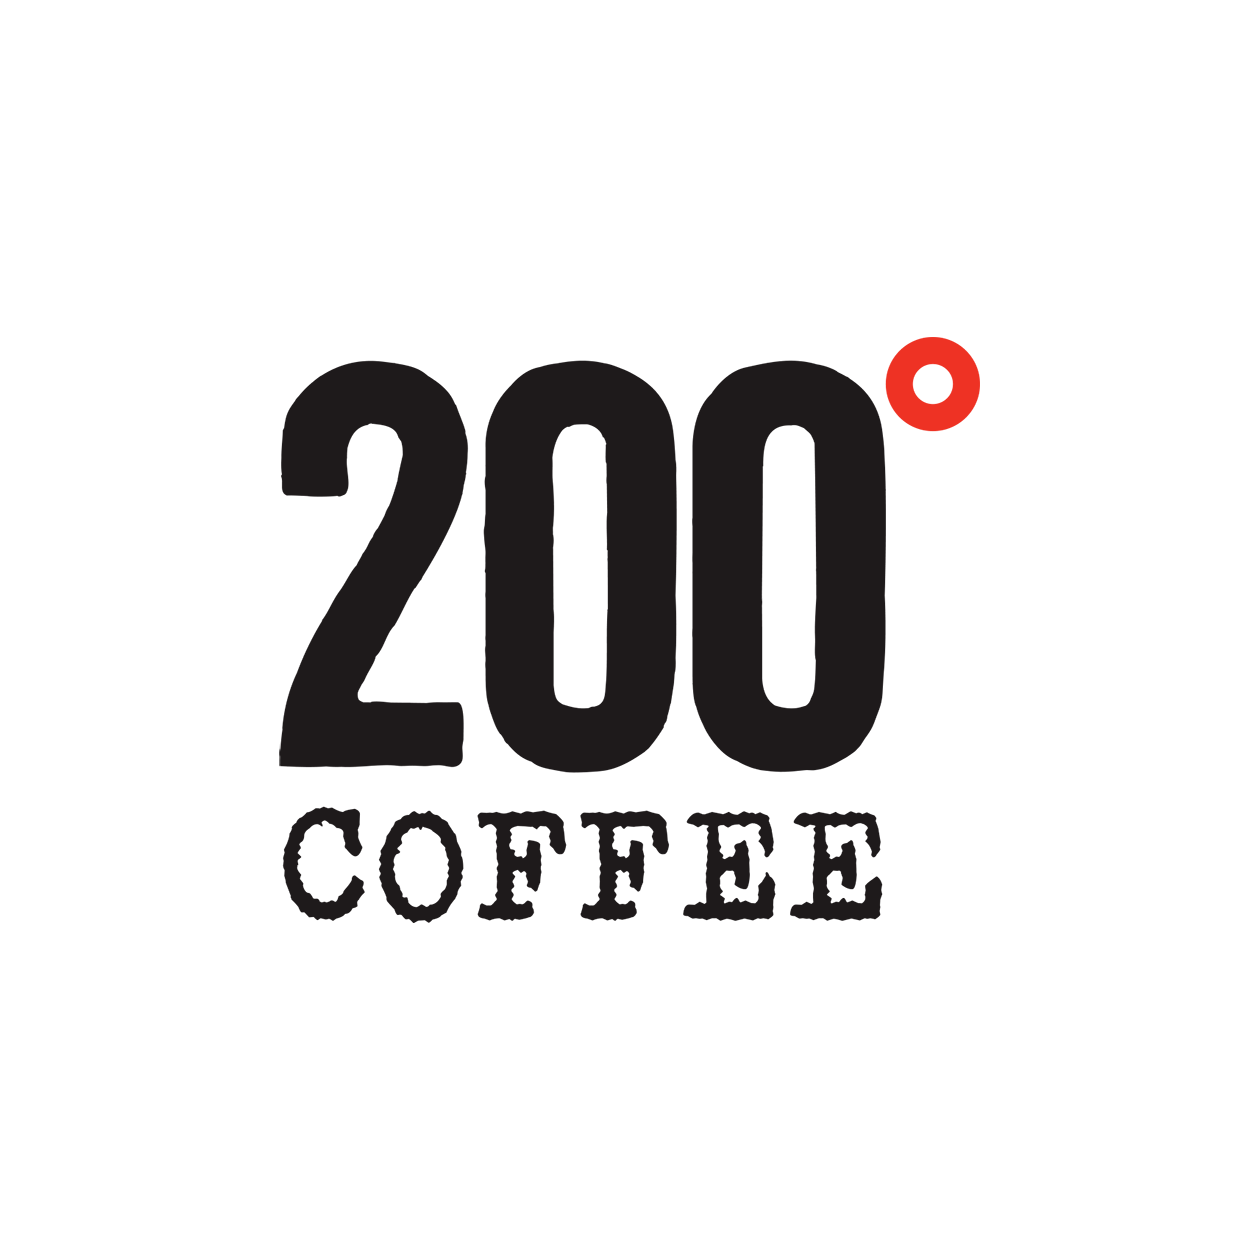 200 Degrees Brand Logo